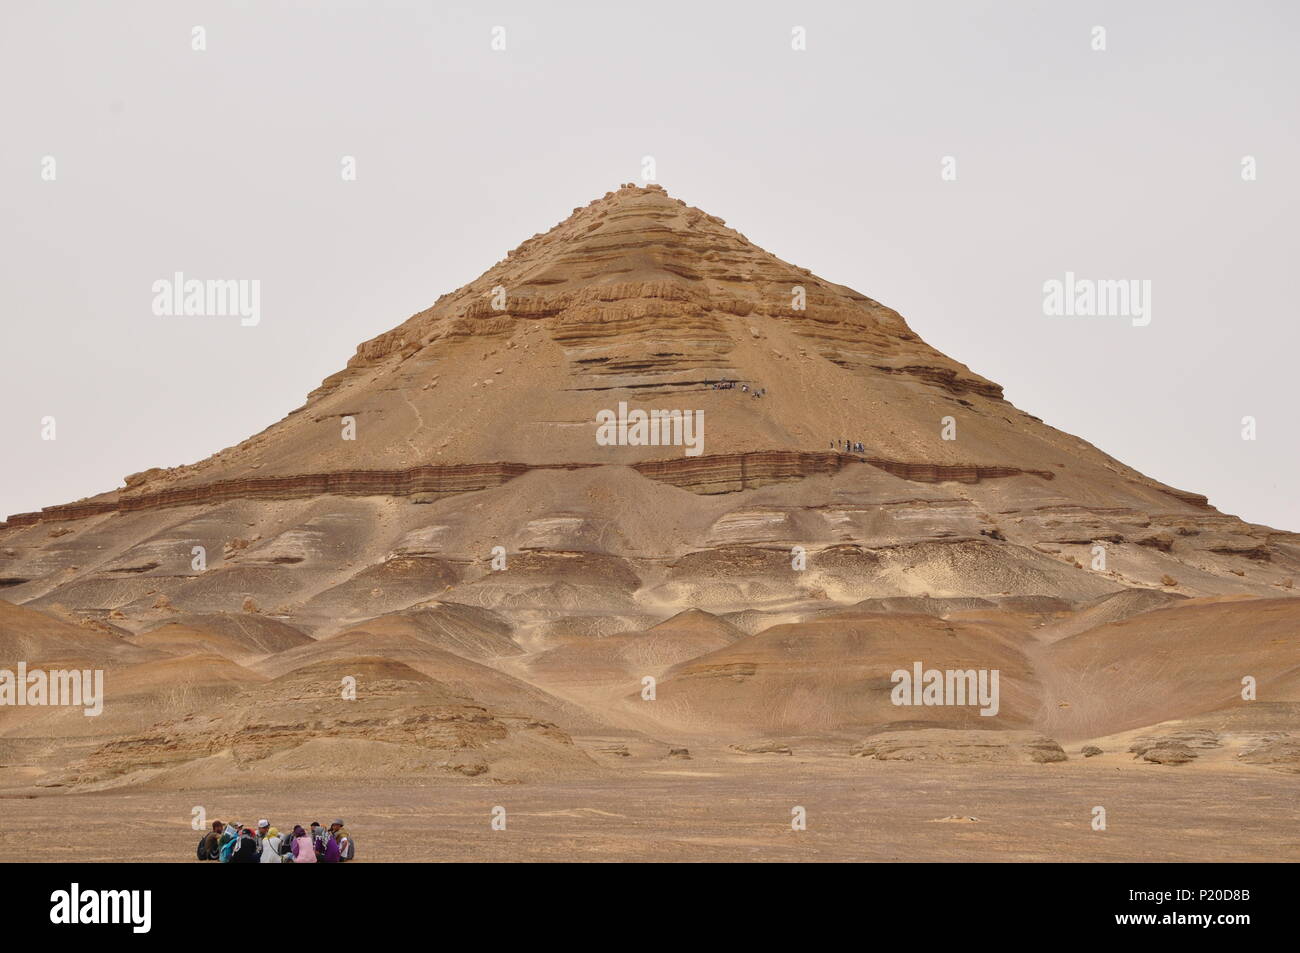 Al-Dist hill ; une forme de pyramide hill (172m de haut) qui est formée de roches sédimentaires, dans l'oasis de Bahariya, désert de l'Ouest, l'Egypte. Banque D'Images